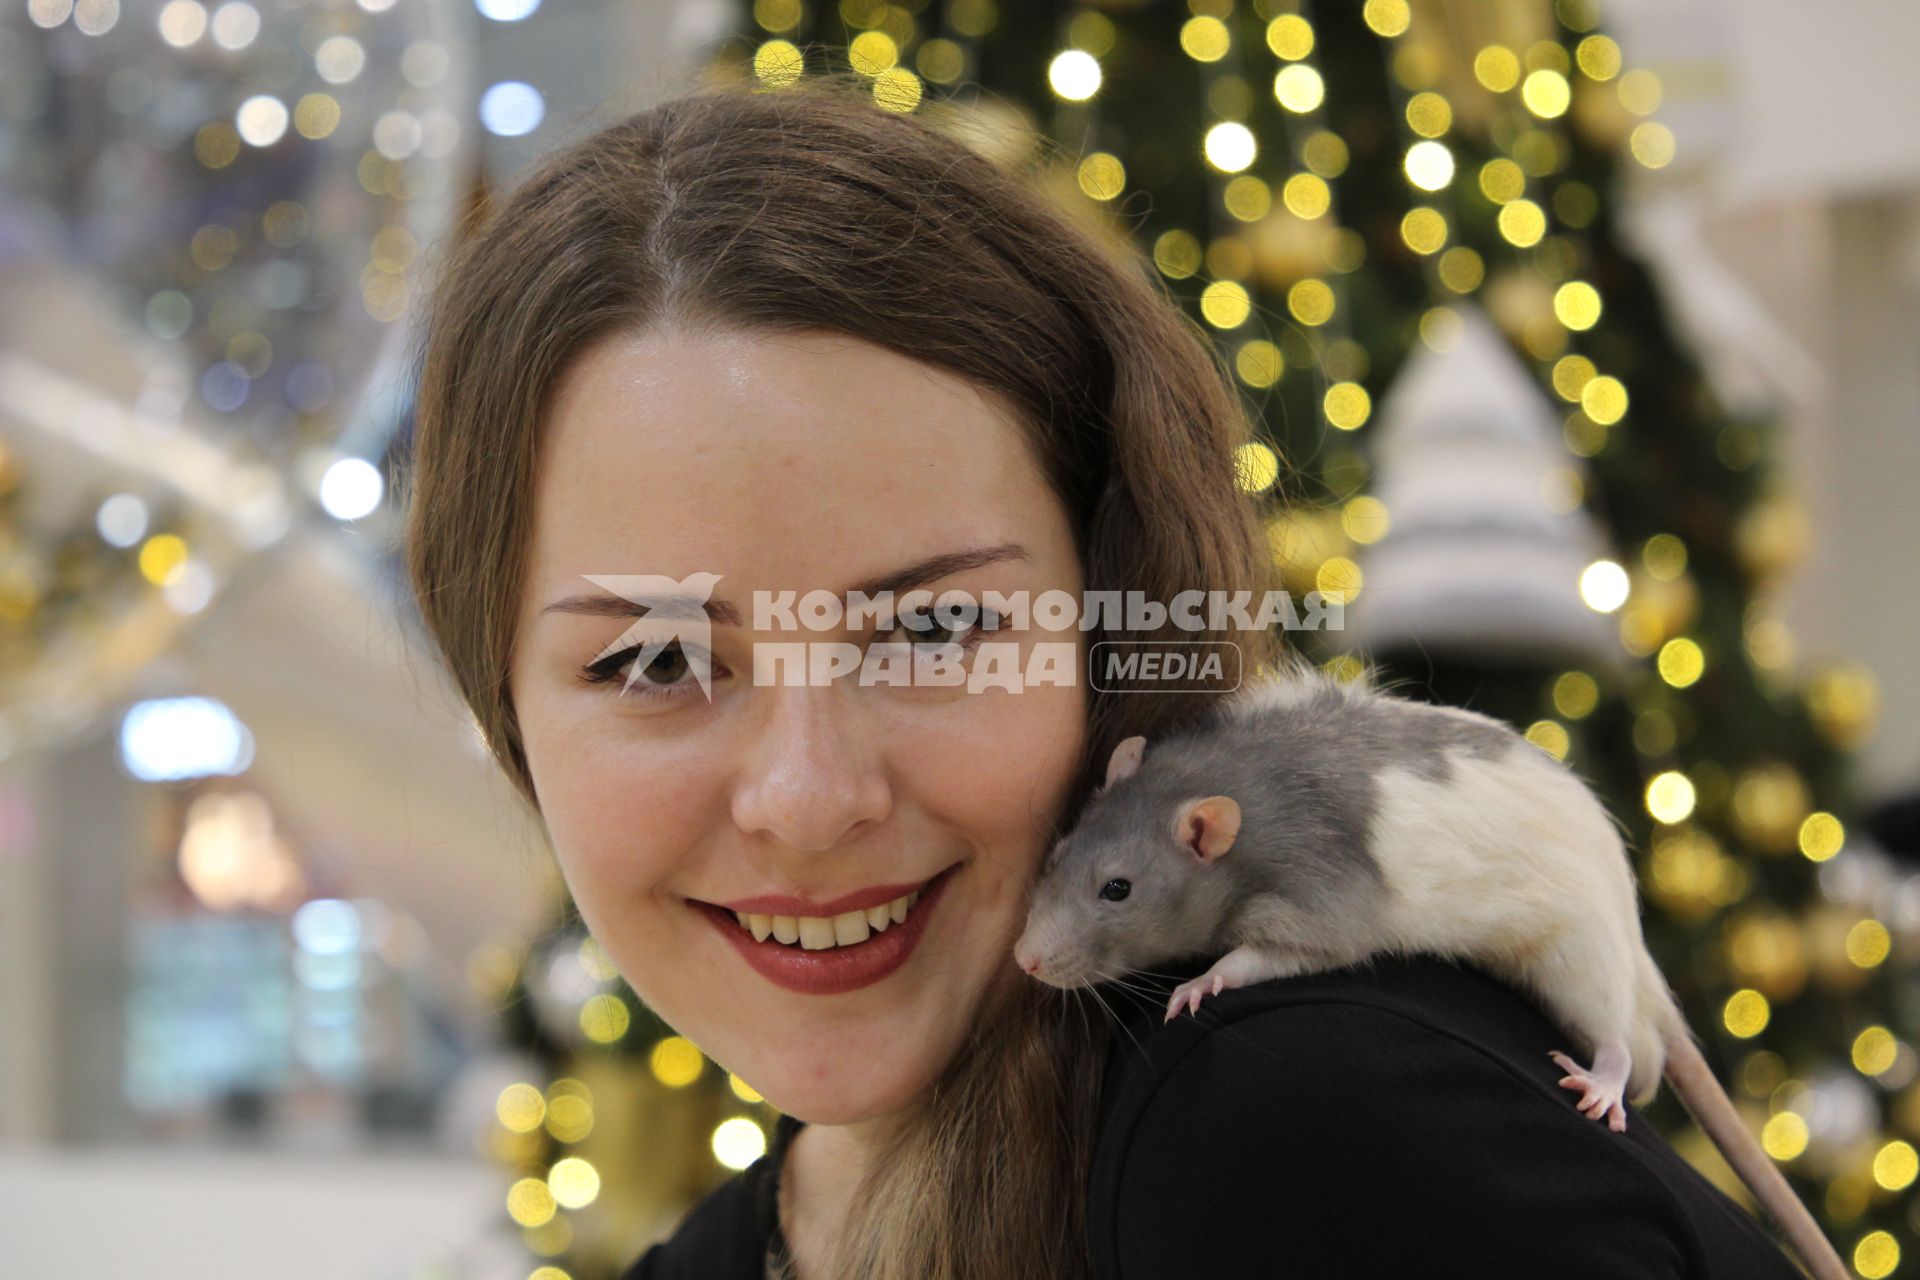 Иркутск. Девушка с крысой у новогодней елки.